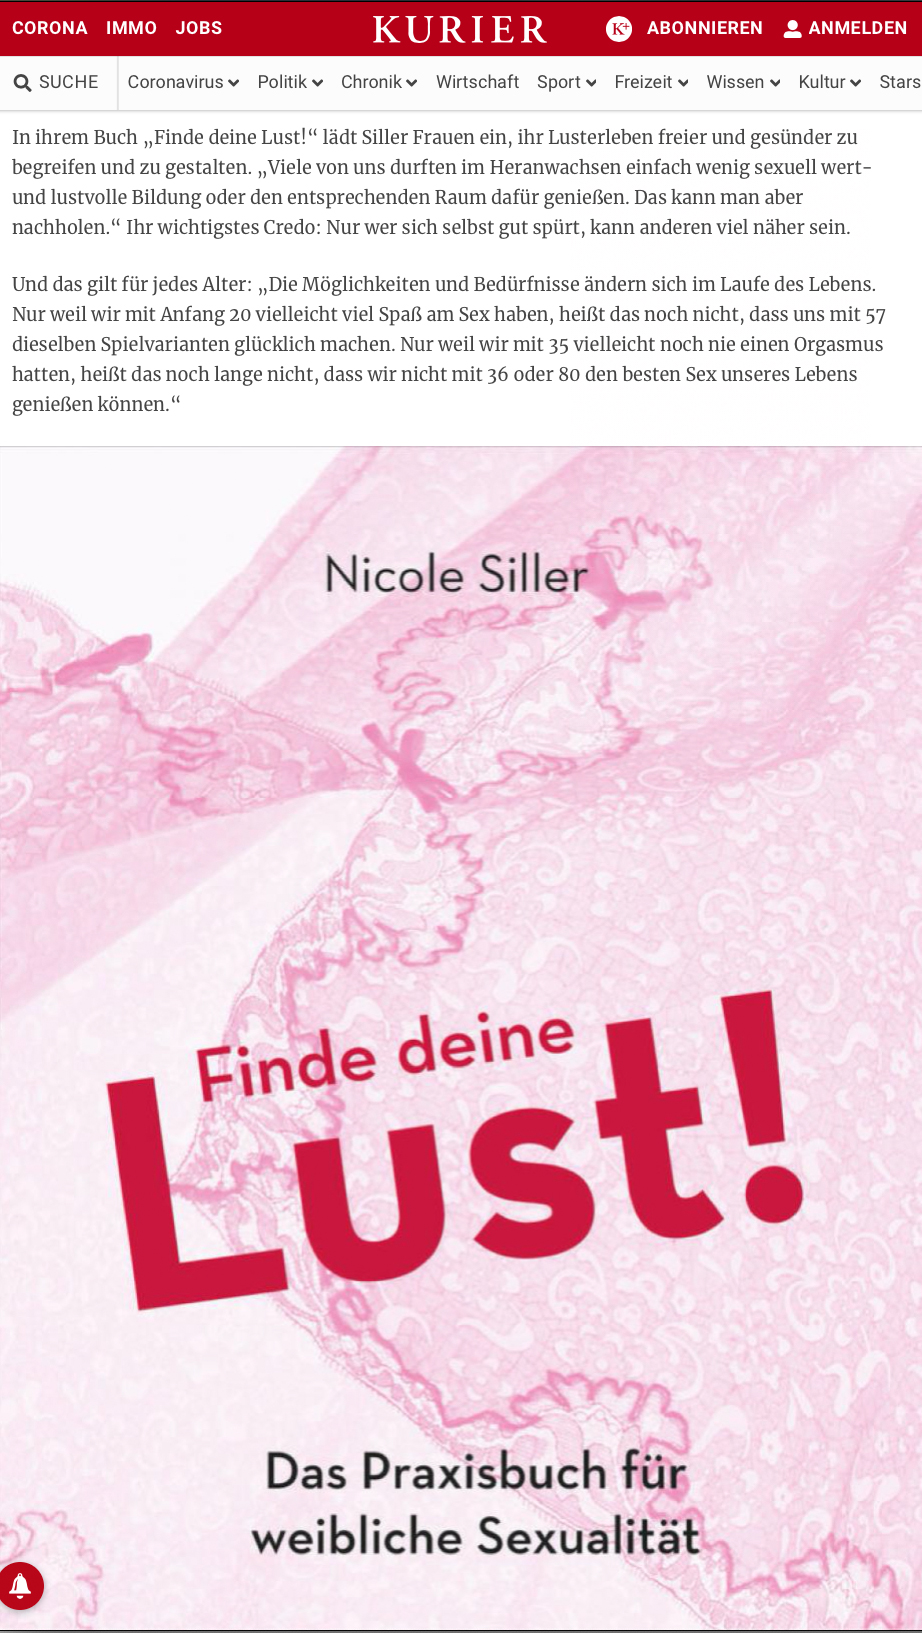 Nicole Siller lebendich. "Finde deine Lust" Online Kurier 29/3/19